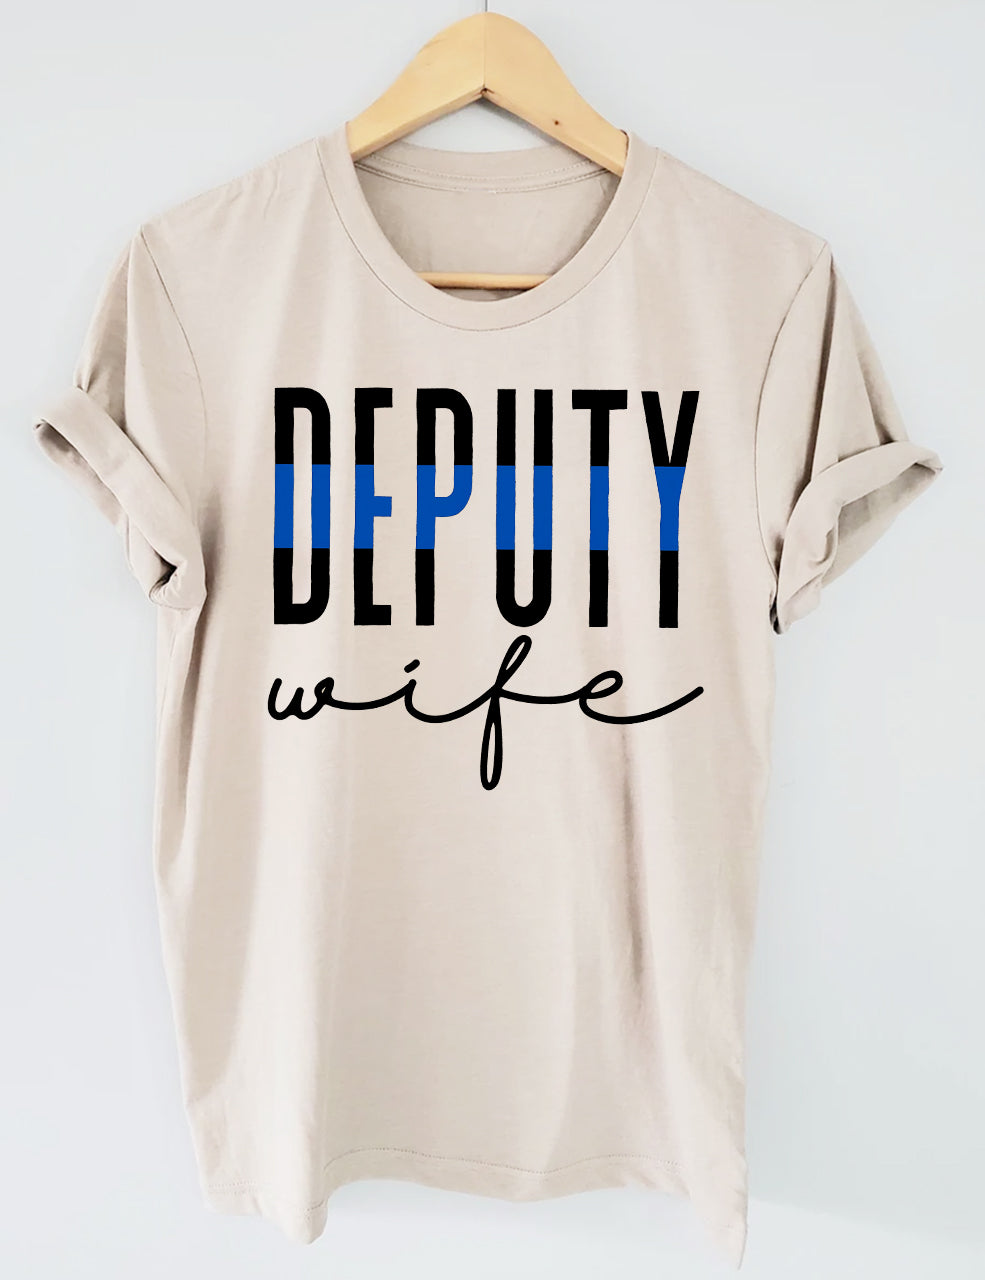 Deputy Wife T-shirt